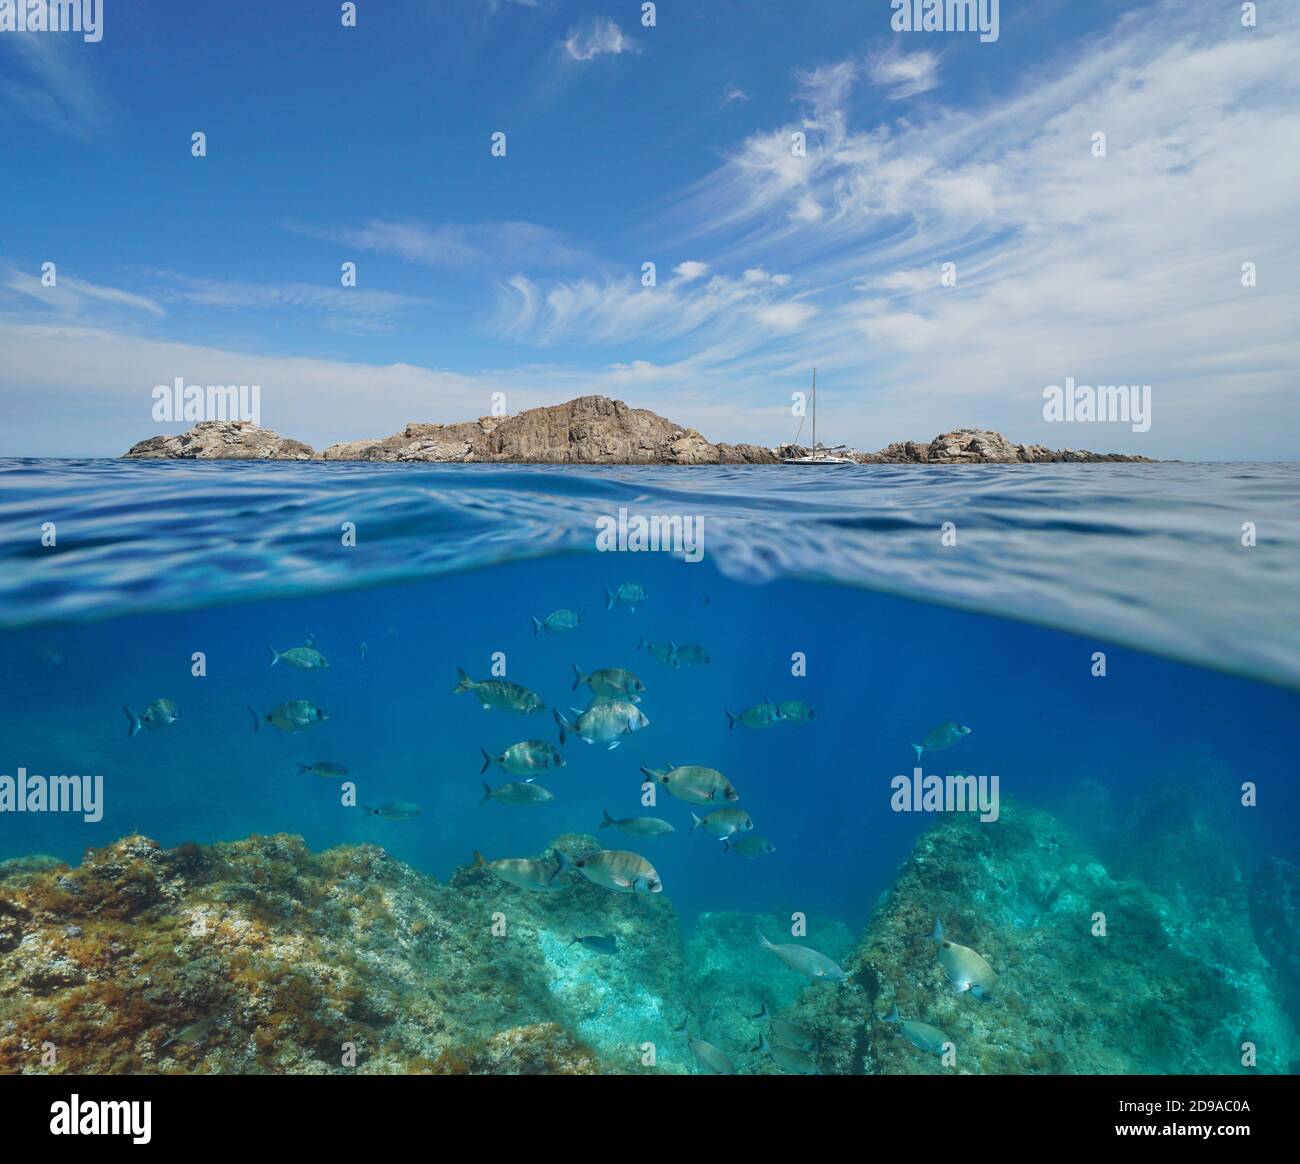 Paysage marin de la mer Méditerranée, île rocheuse et un groupe de poissons sous-marins, Cap de Creus, Costa Brava, Catalogne, Espagne, vue partagée sur sous l'eau Banque D'Images